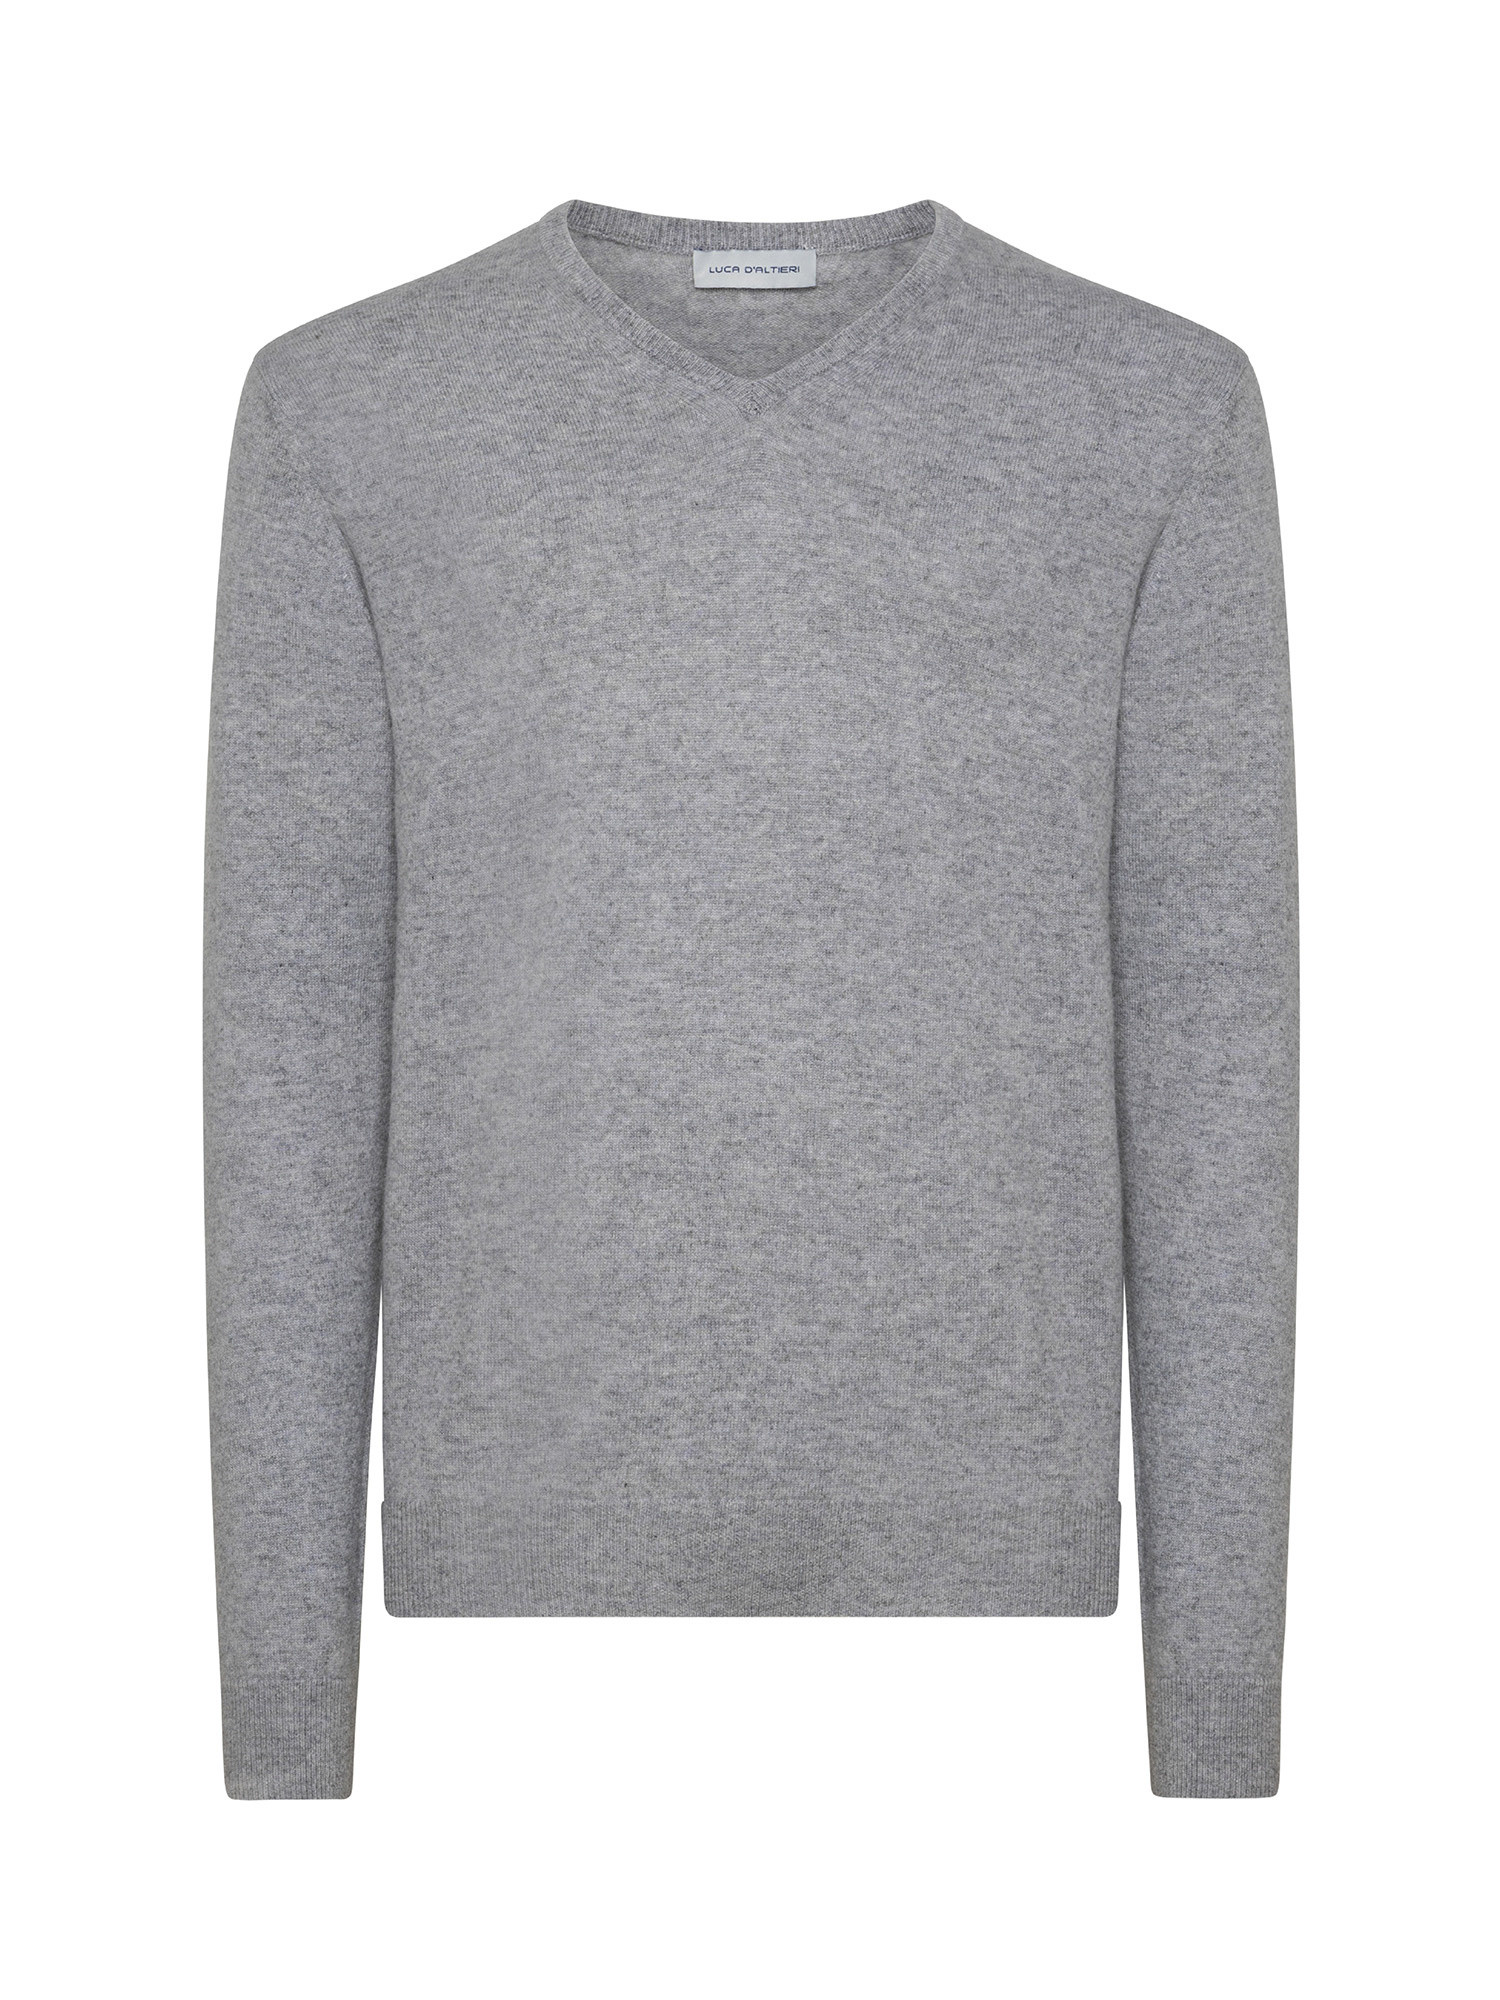 Пуловер с V-образным вырезом из чистого кашемира Luca D'Altieri, серый пуловер с v образным вырезом xs бежевый